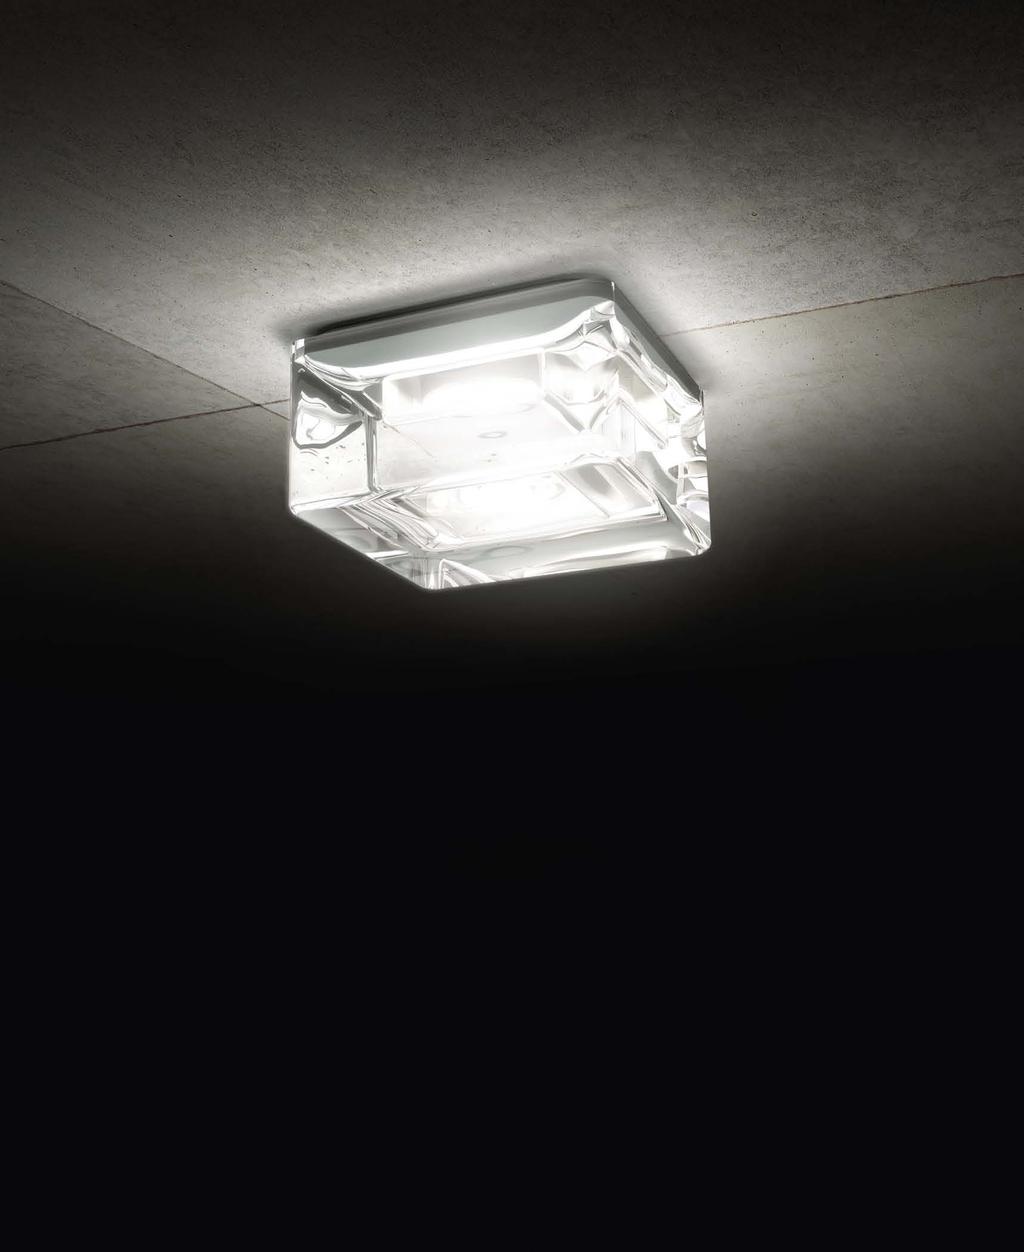 Design by LED light